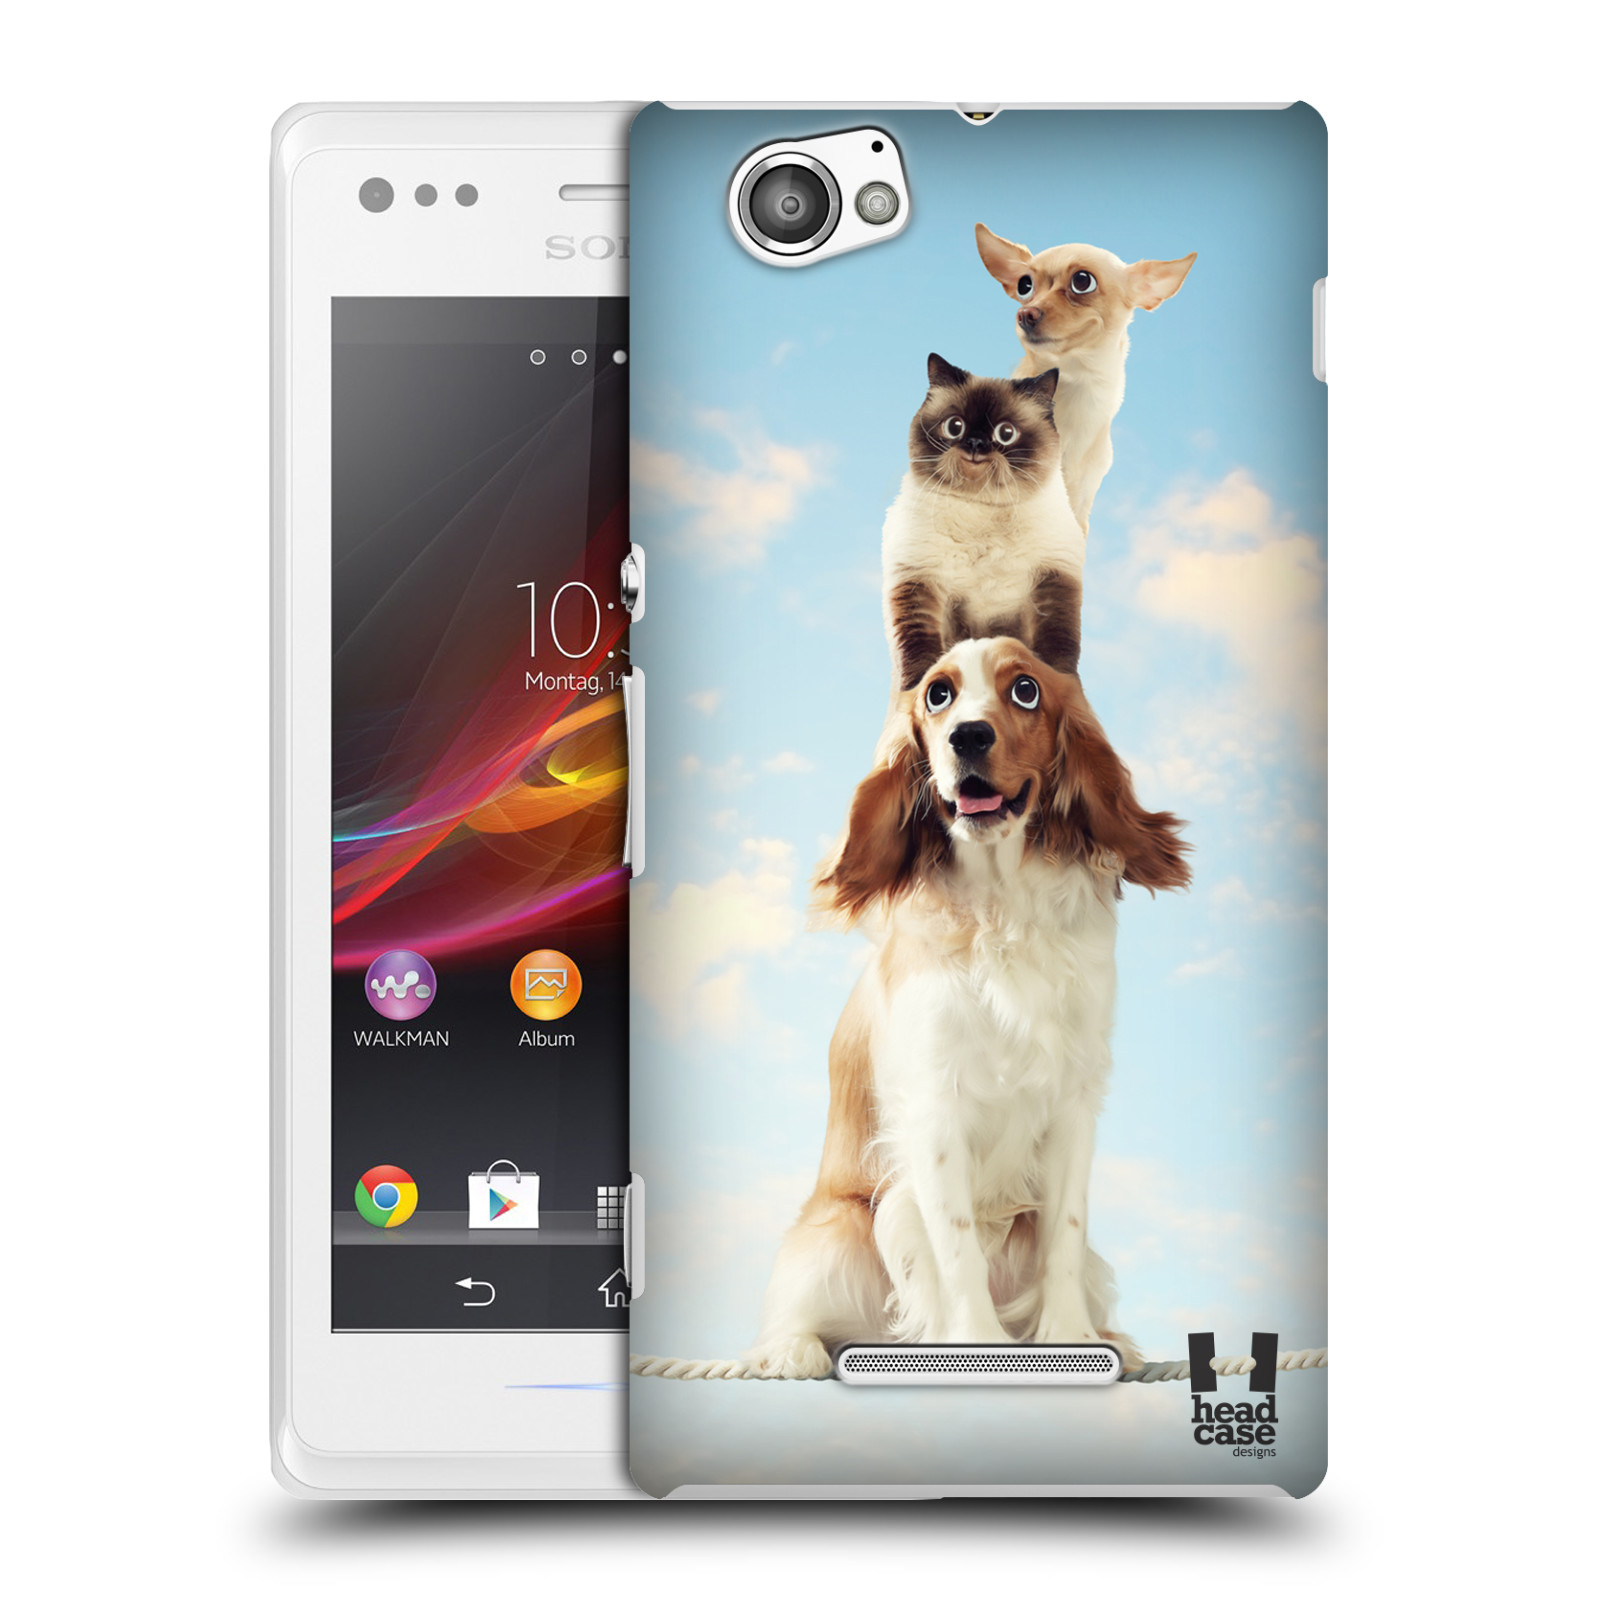 HEAD CASE plastový obal na mobil Sony Xperia M vzor Legrační zvířátka zvířecí totem